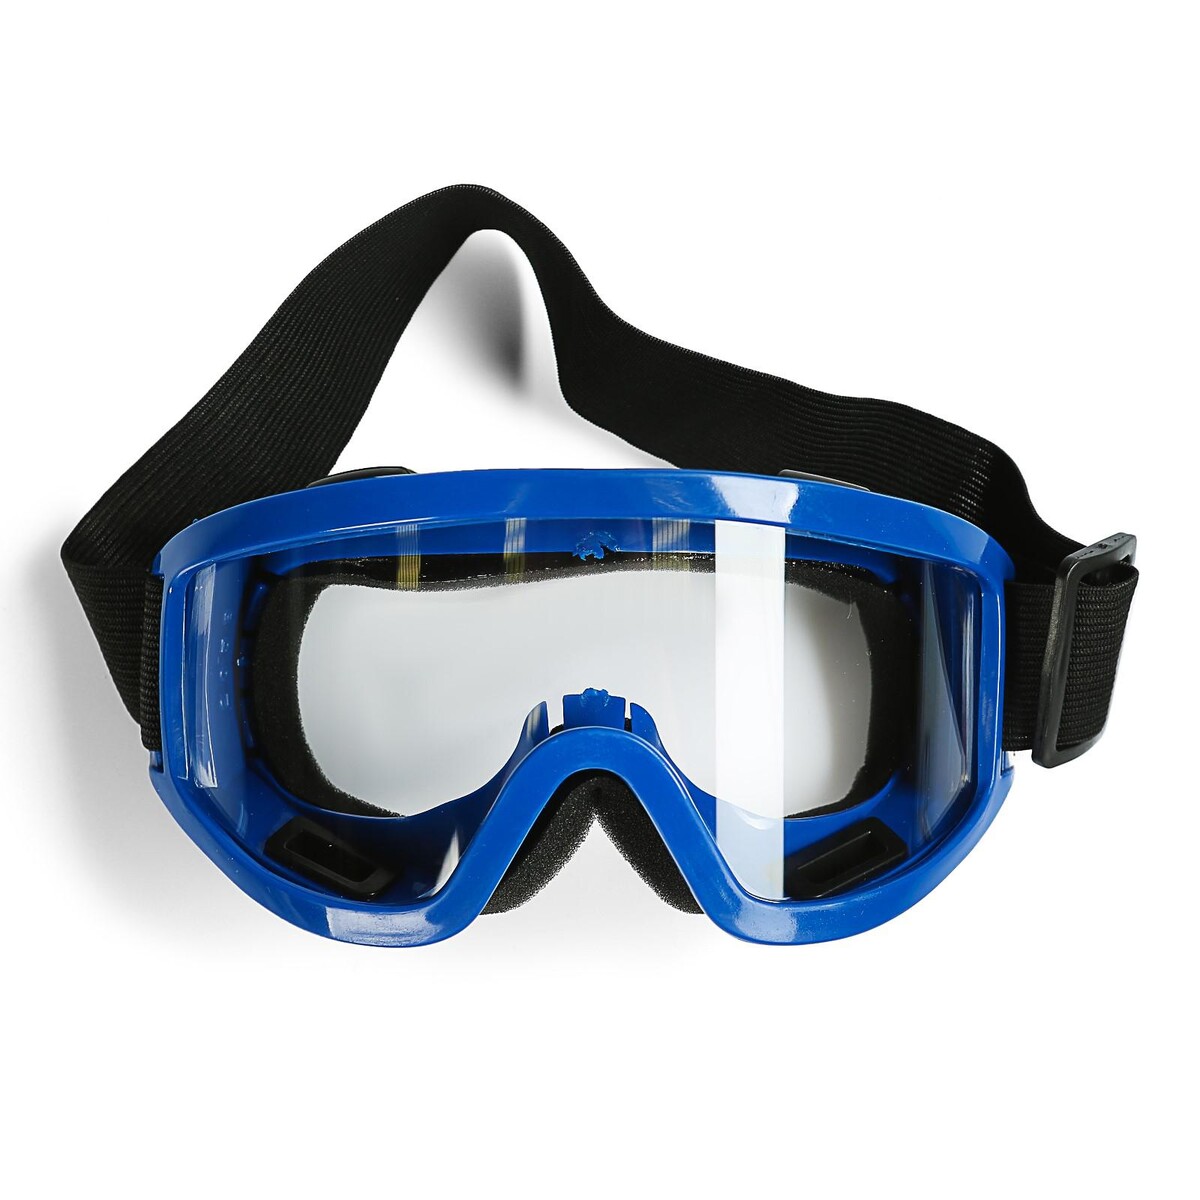 Очки-маска для езды на мототехнике, стекло прозрачное, цвет синий очки маска для езды на мототехнике стекло золотой хром синий ом 11